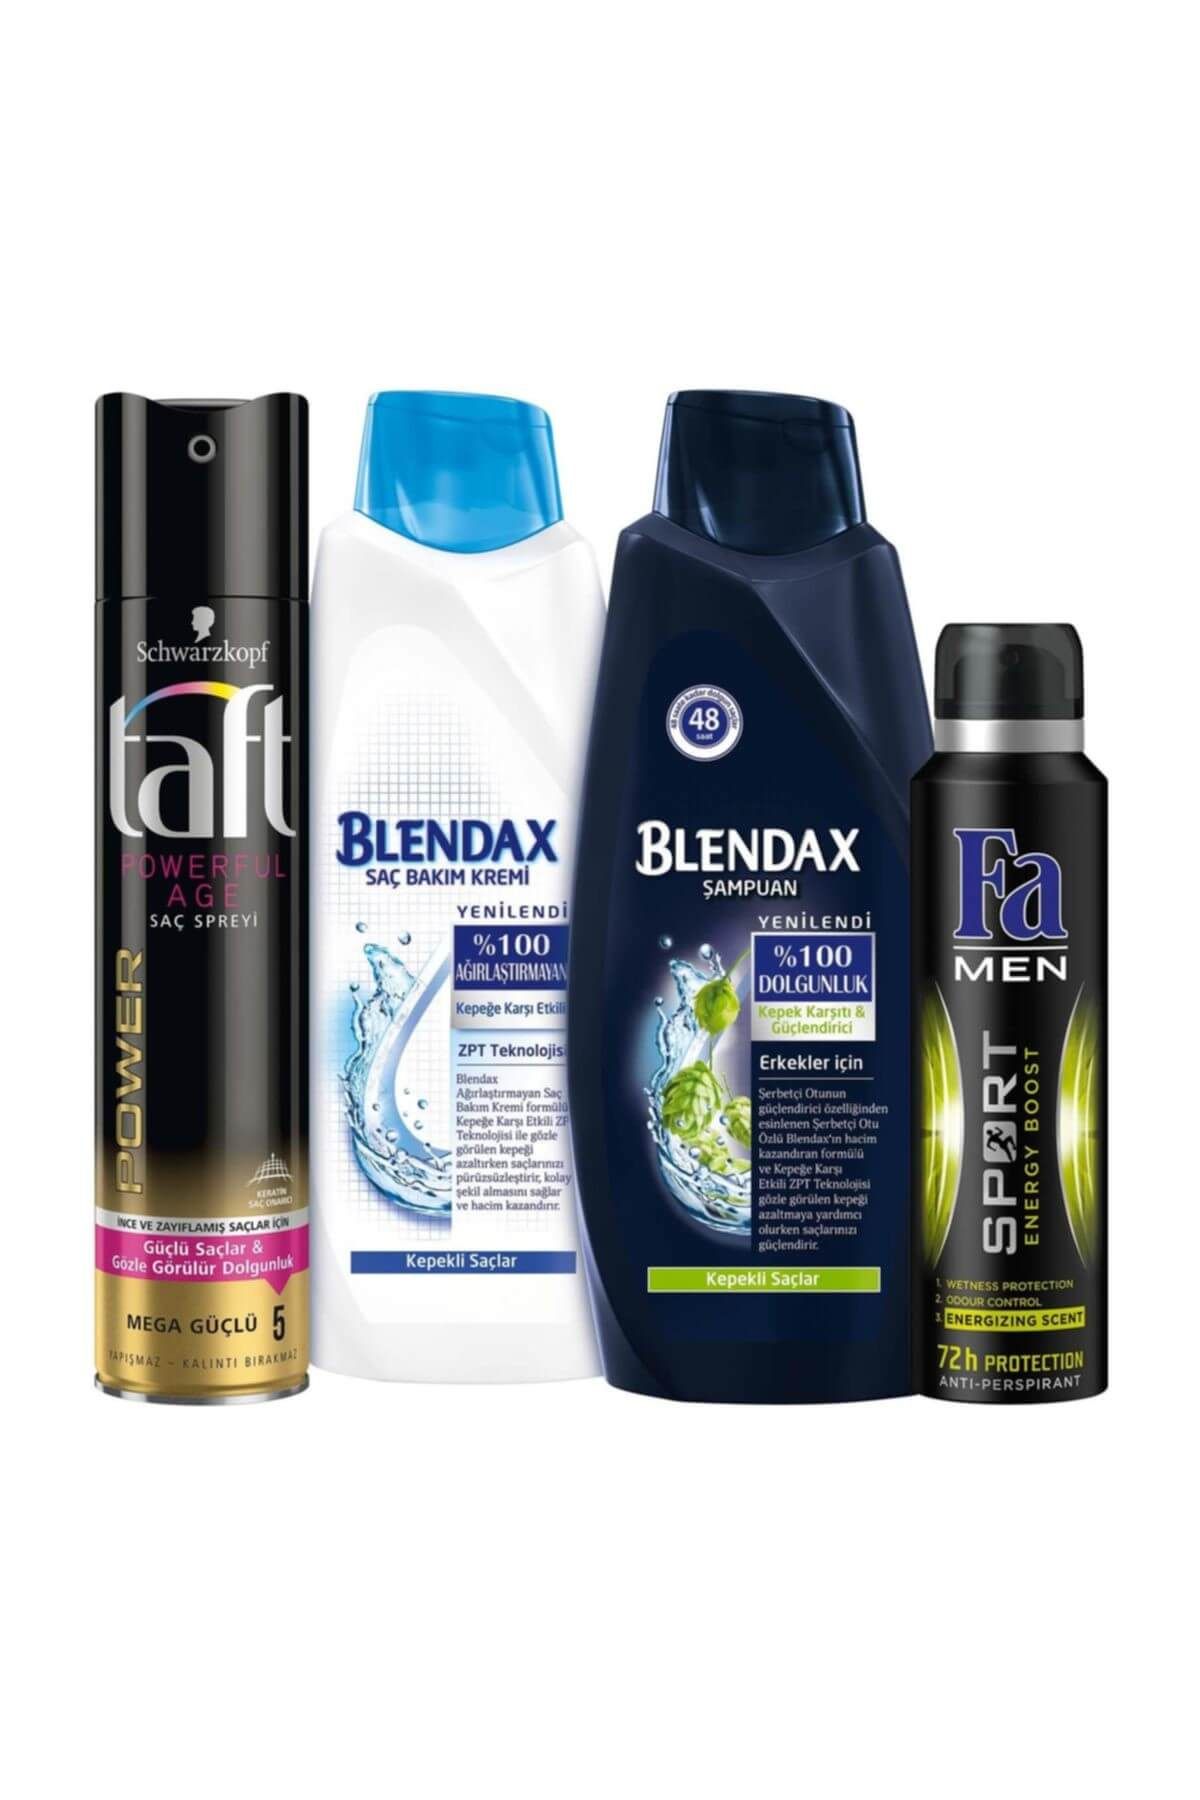 Blendax Saç Bakım Kremi 550 ml + Şampuan 550 ml + Sport Deodorant 150 ml + Powerful Age Sprey 250 ml